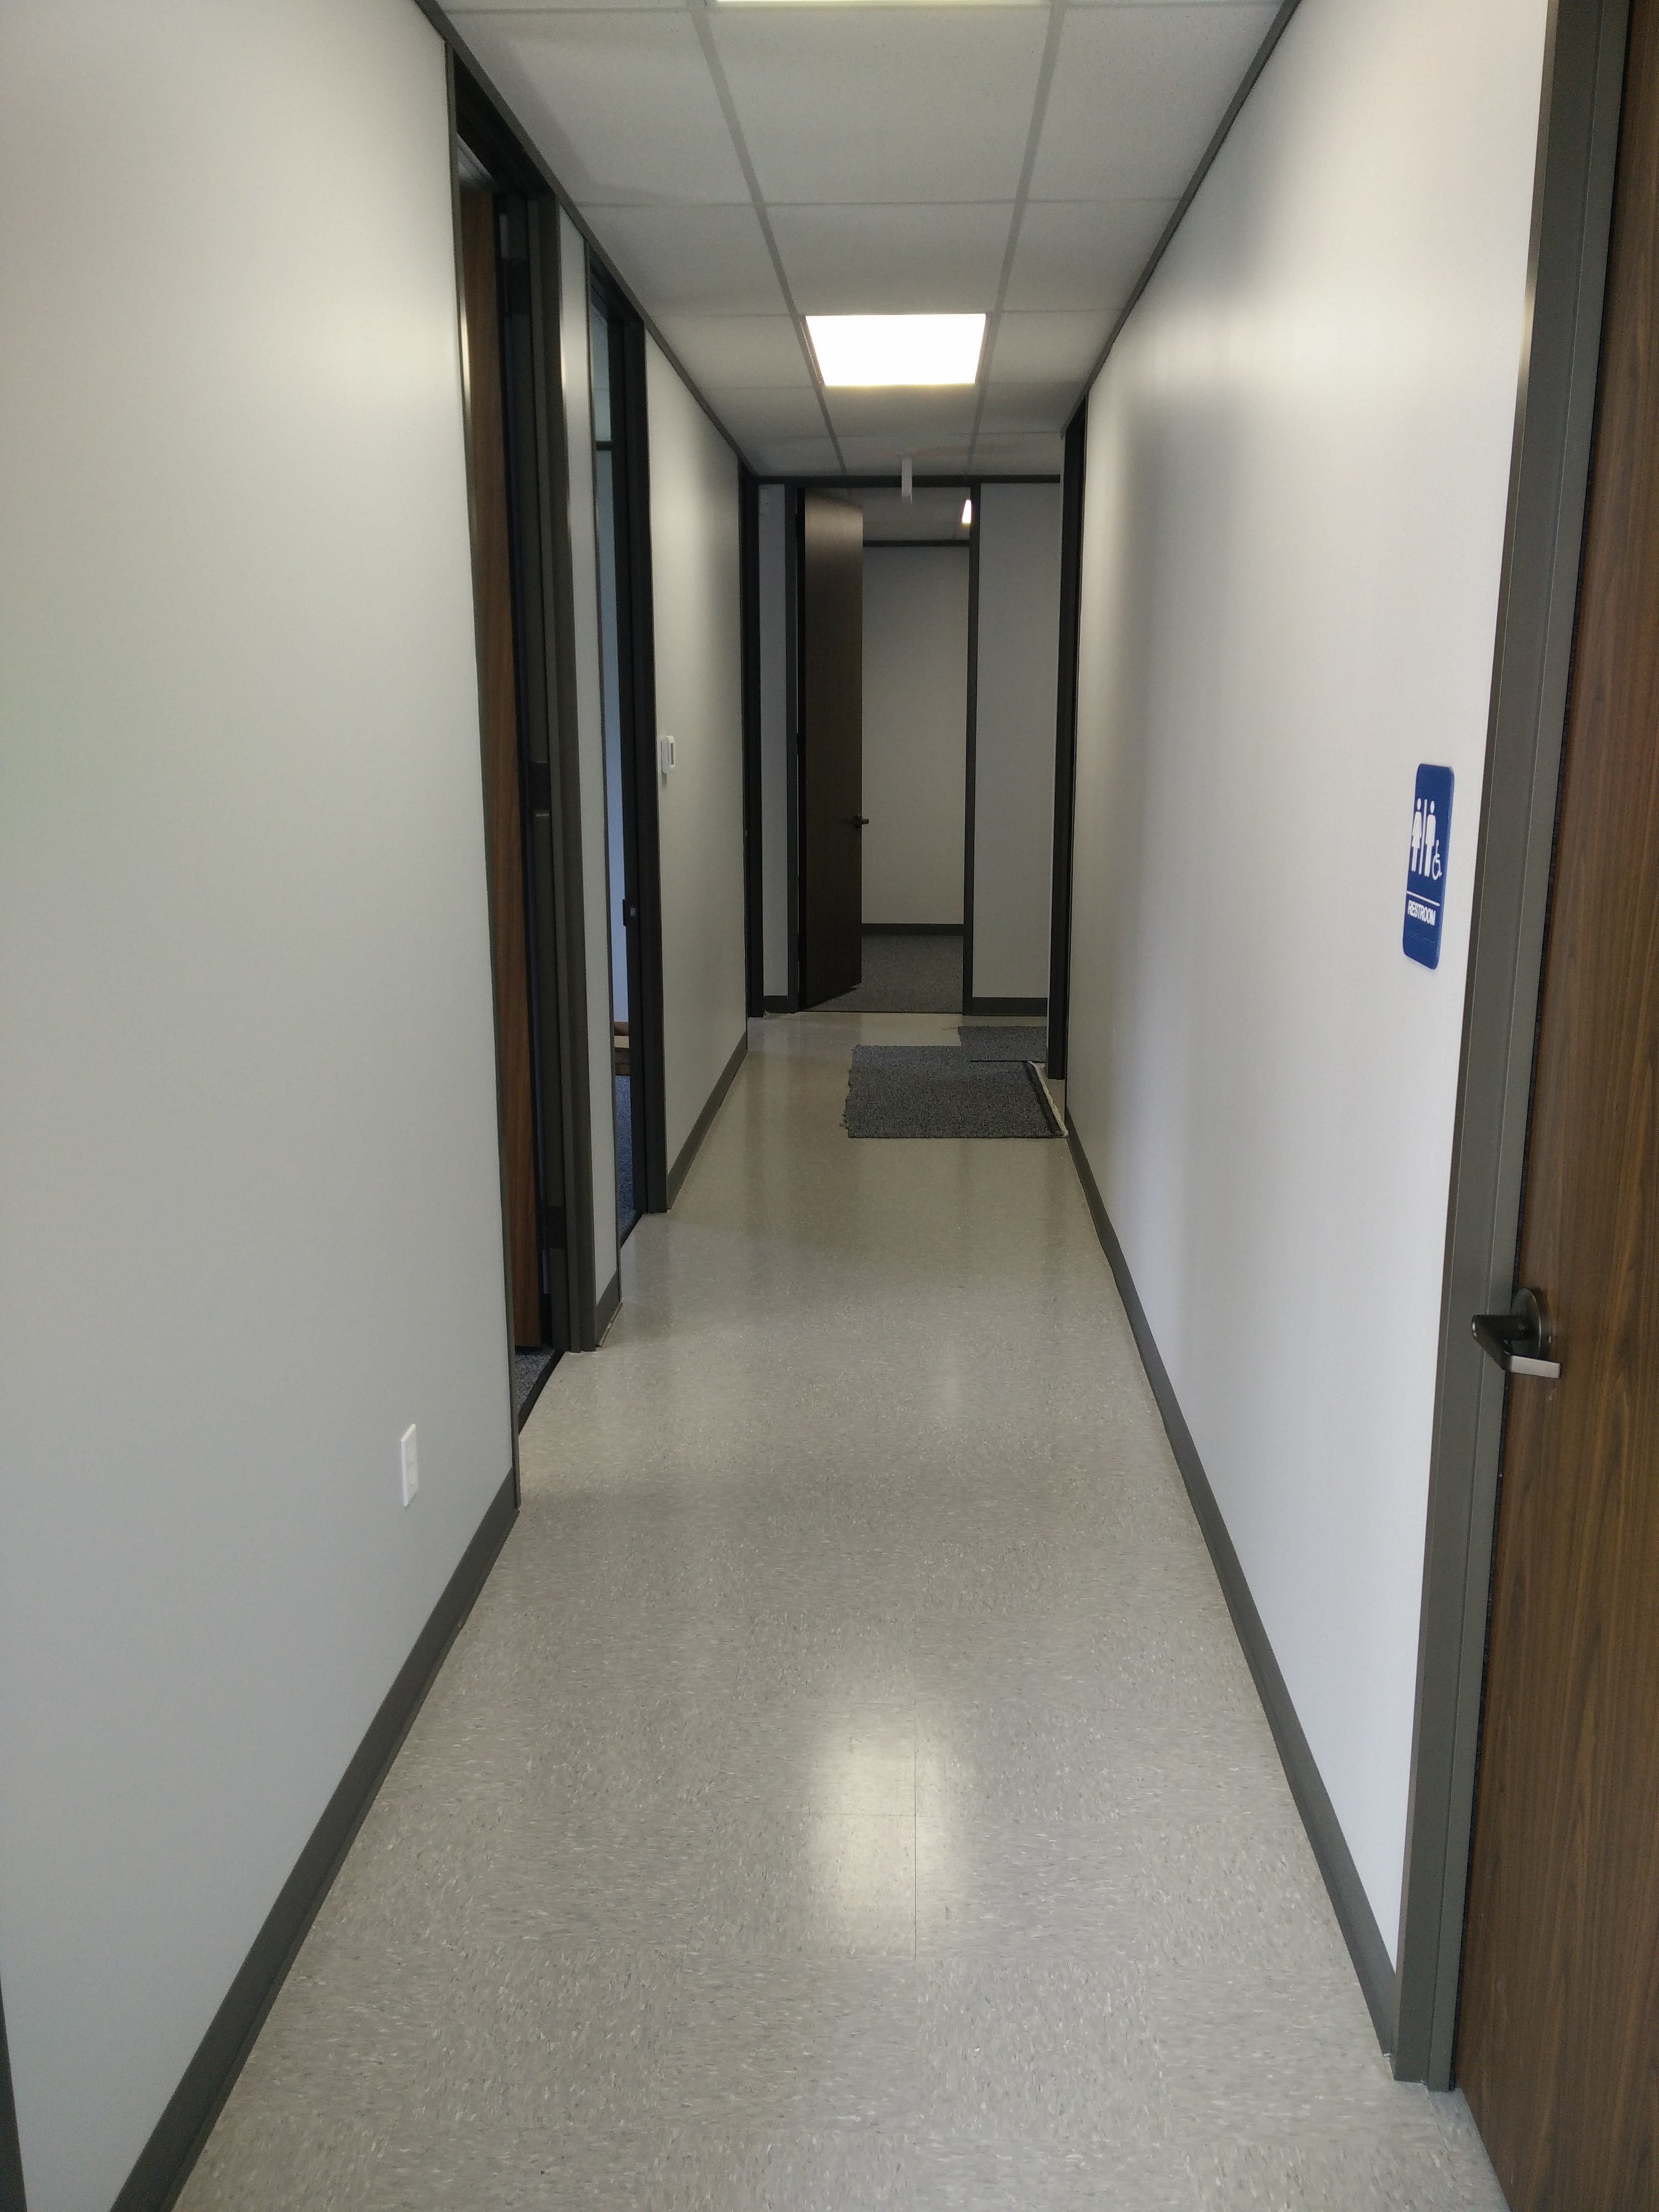 The arbitrary long hallway